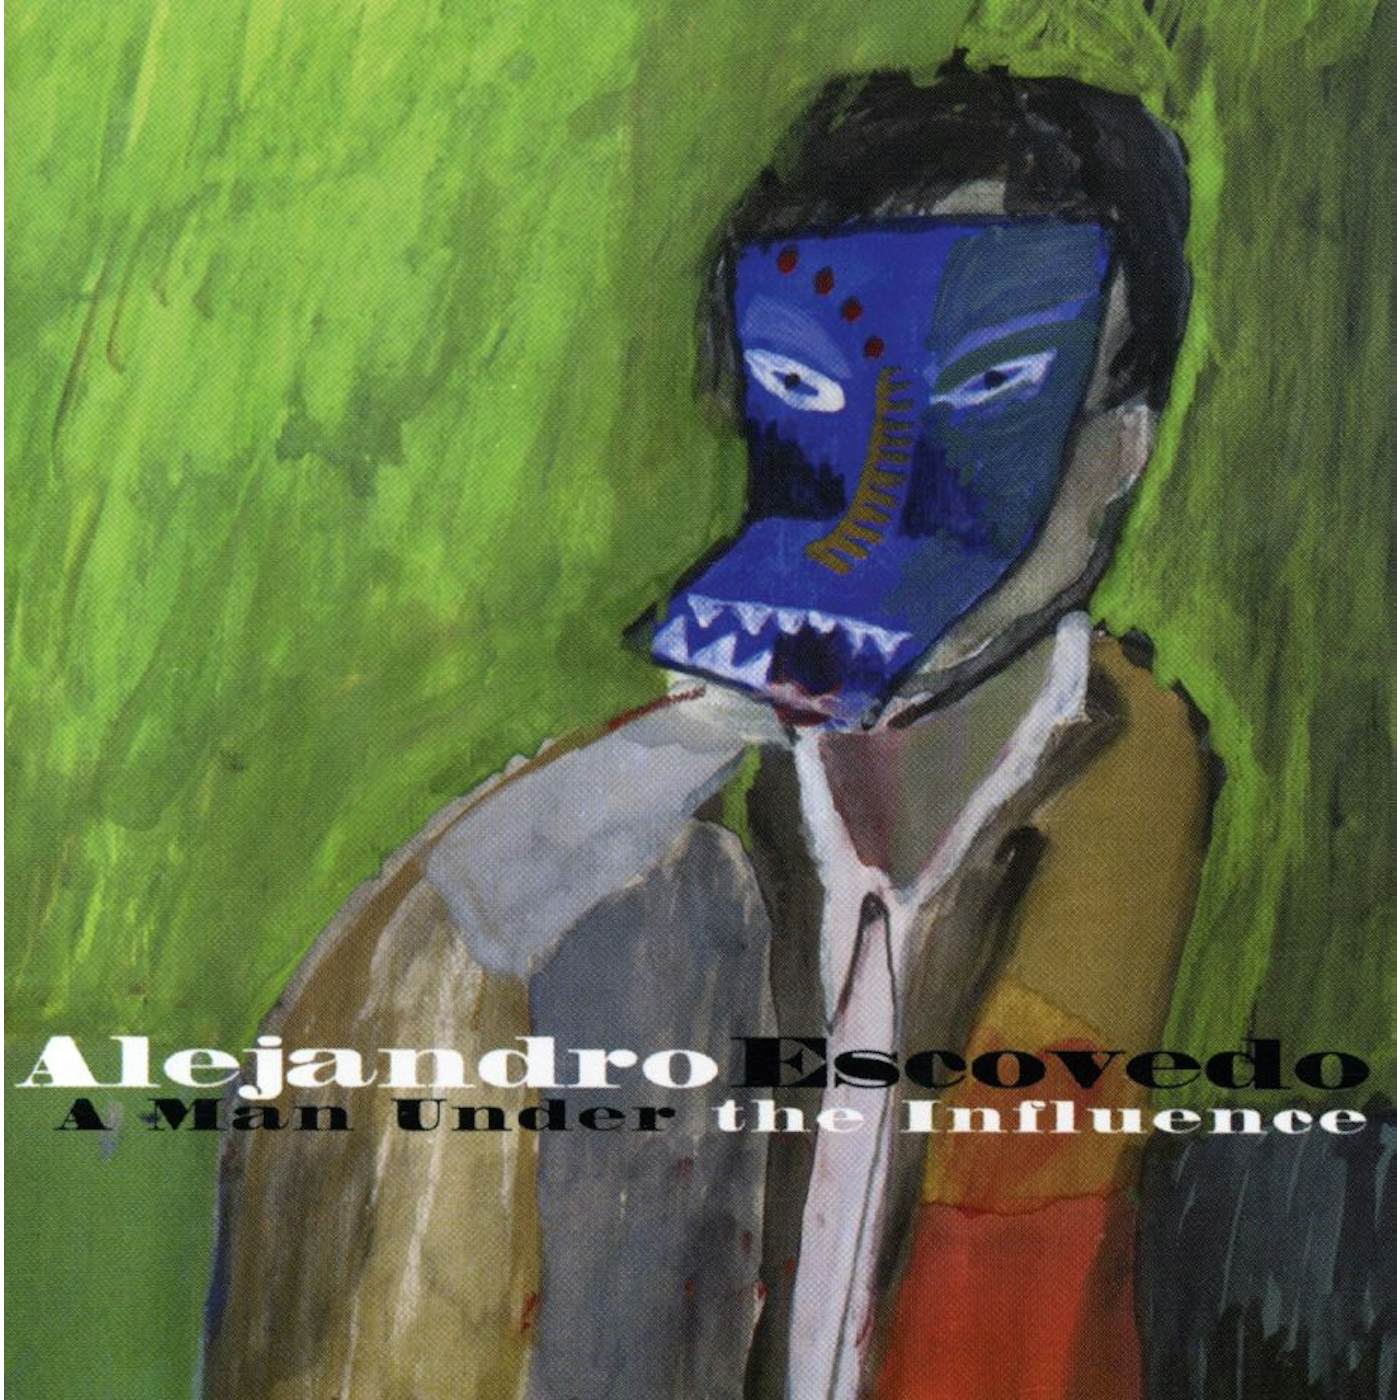 Alejandro Escovedo A MAN UNDER THE INFLUENCE CD